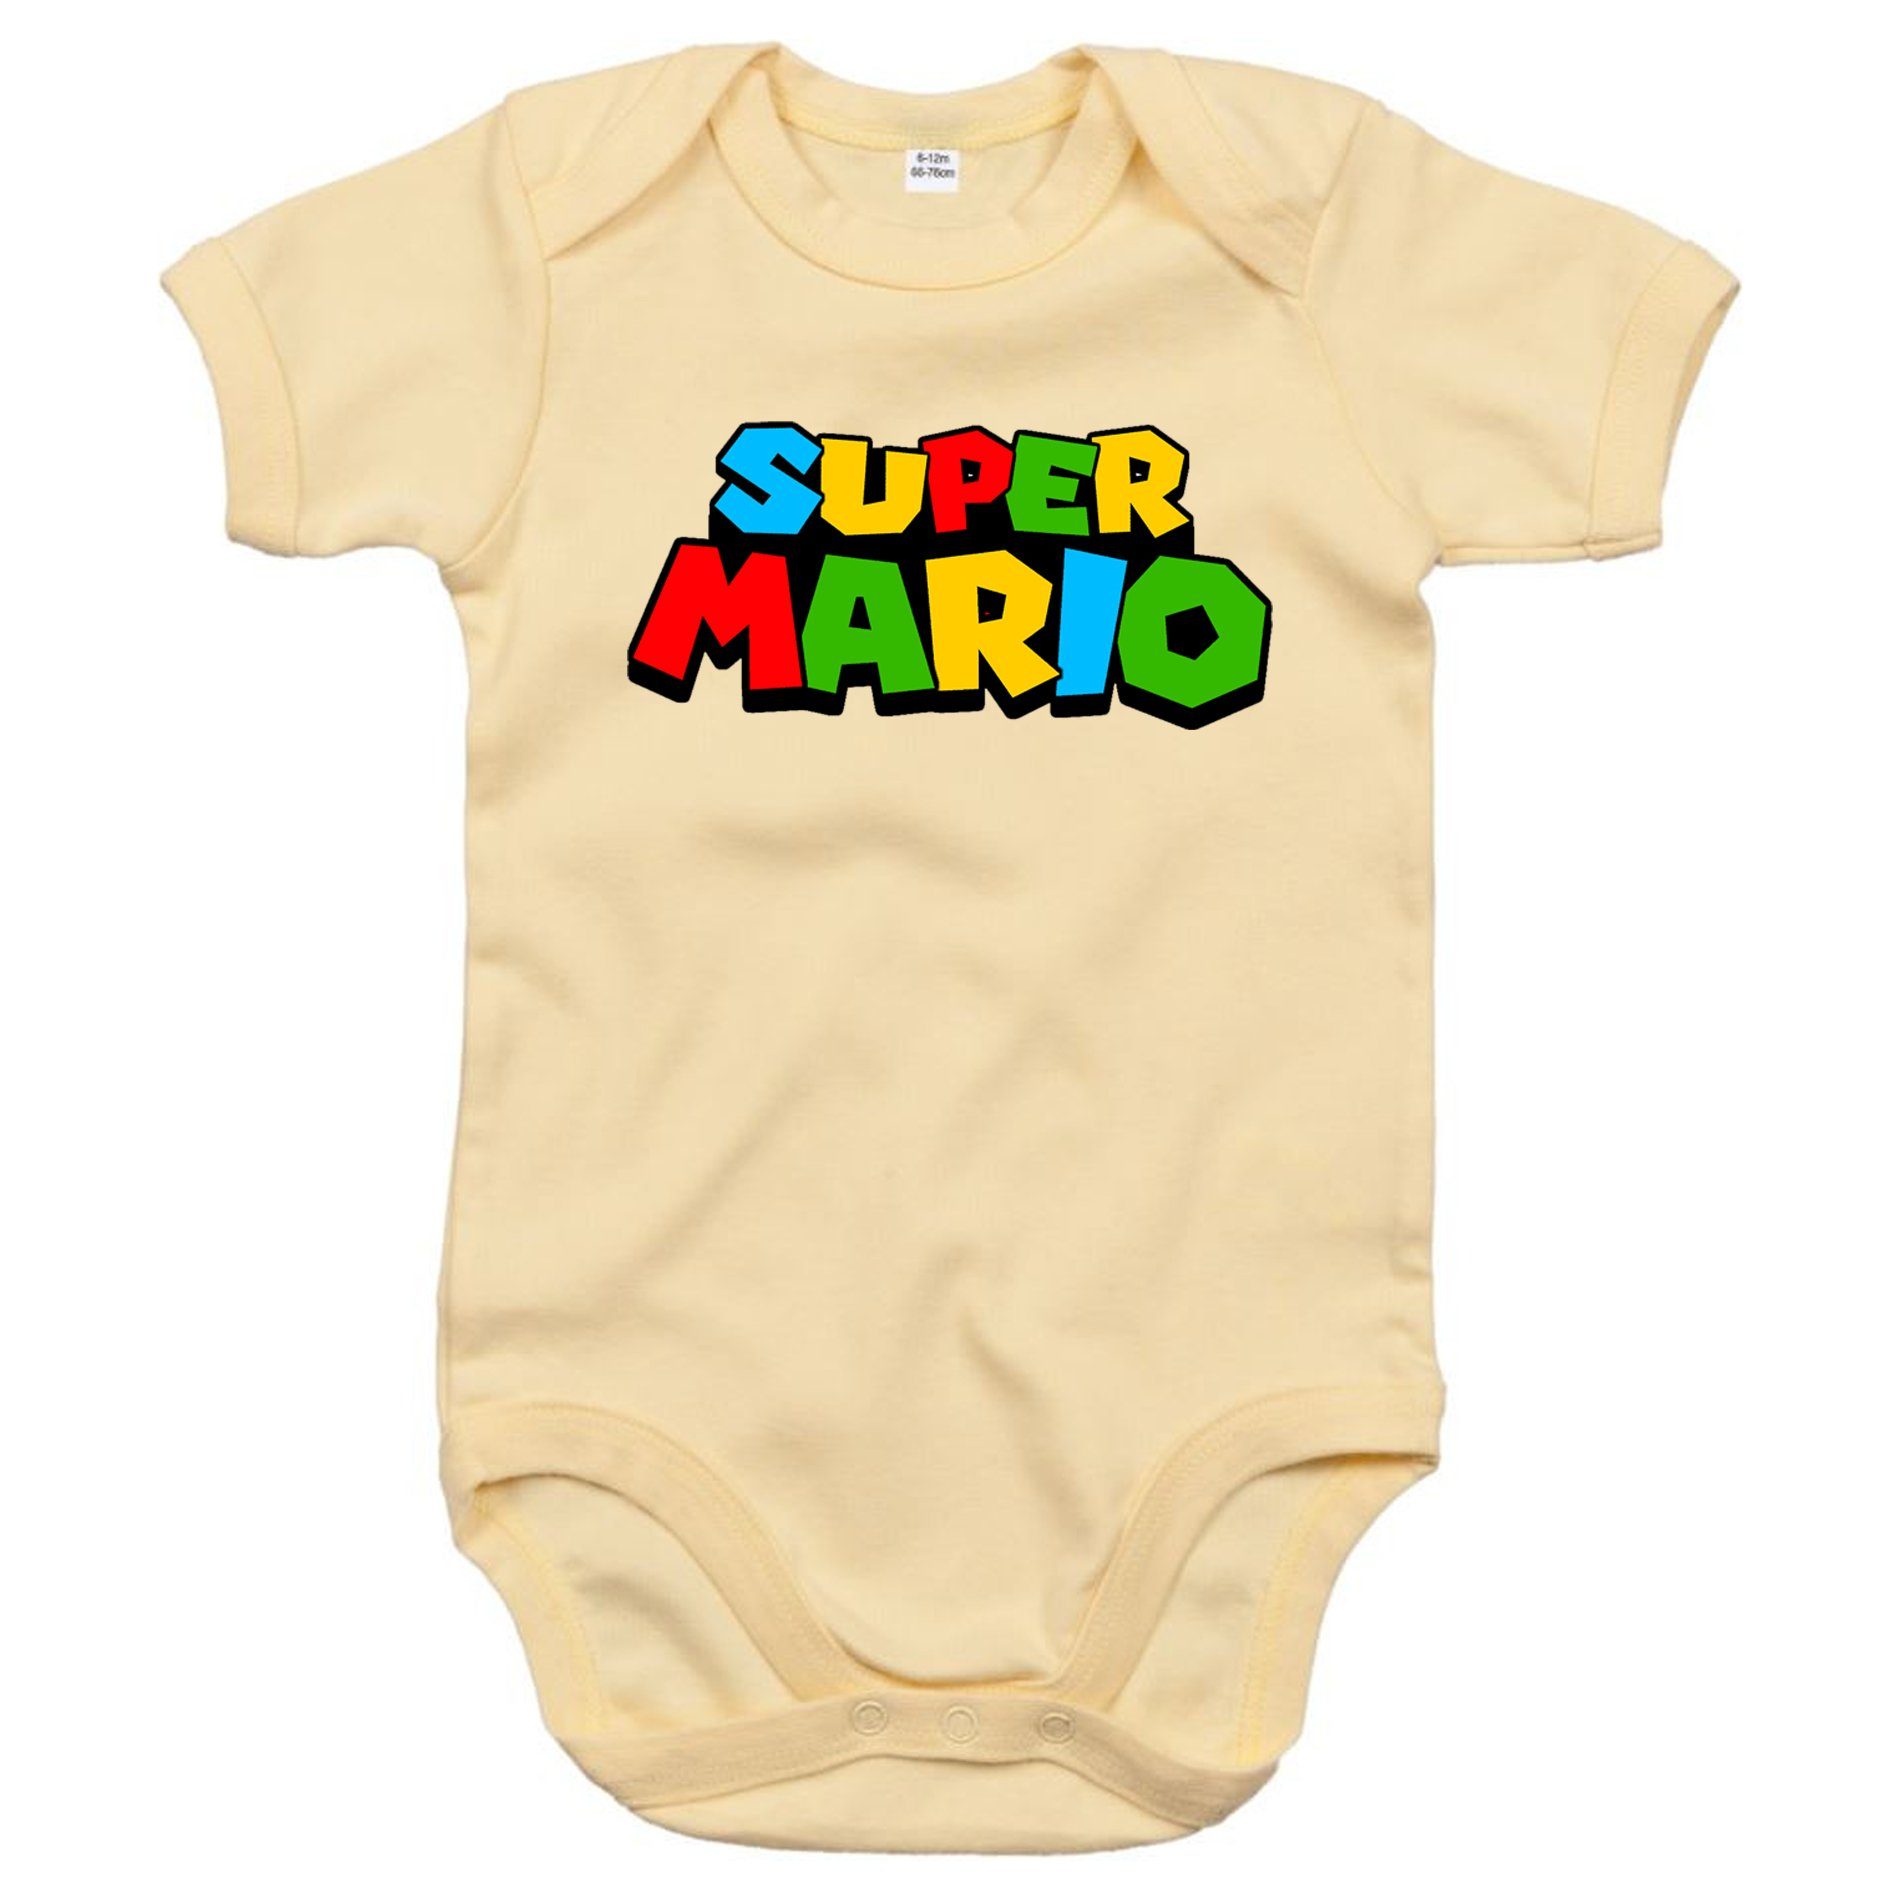 Blondie & Brownie Strampler Kinder Baby Super Mario Nintendo Gamer Gaming Konsole Spiele Beige